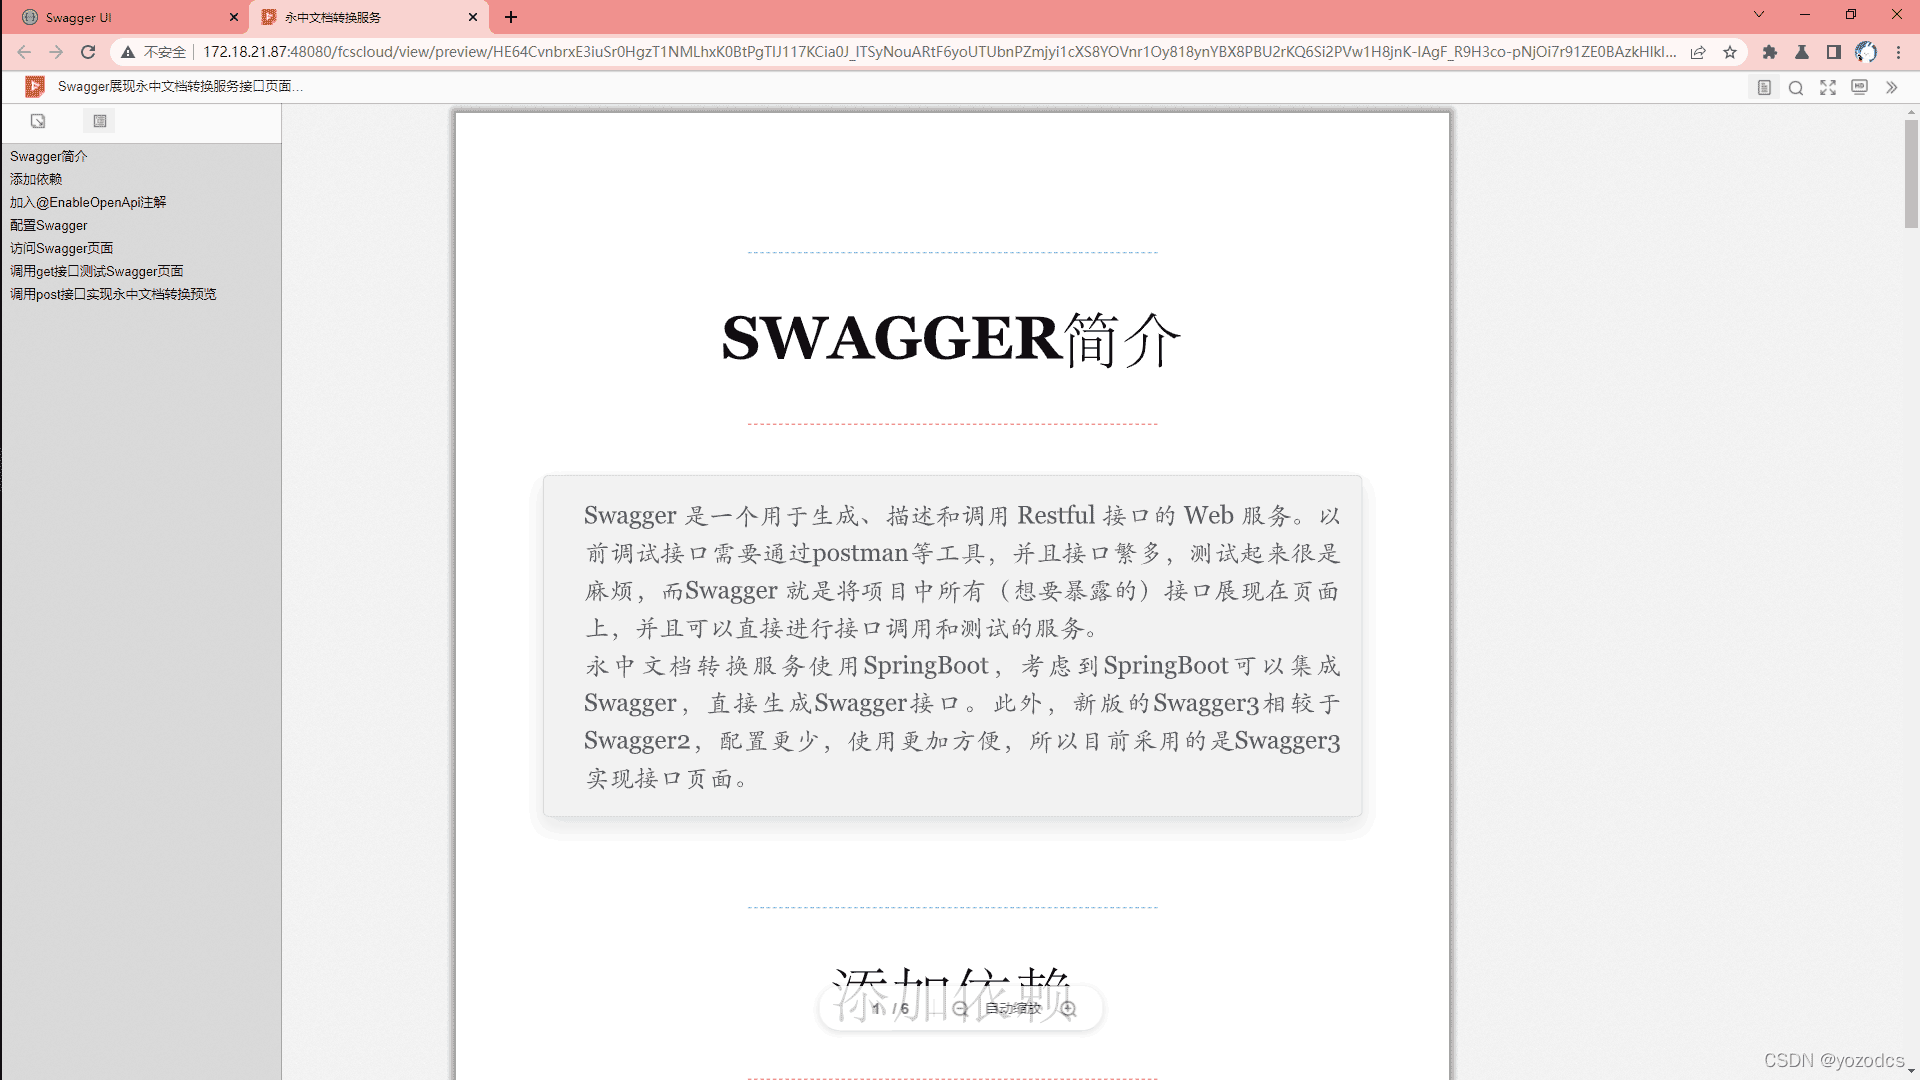 永中文档在线转换服务Swagger调用说明